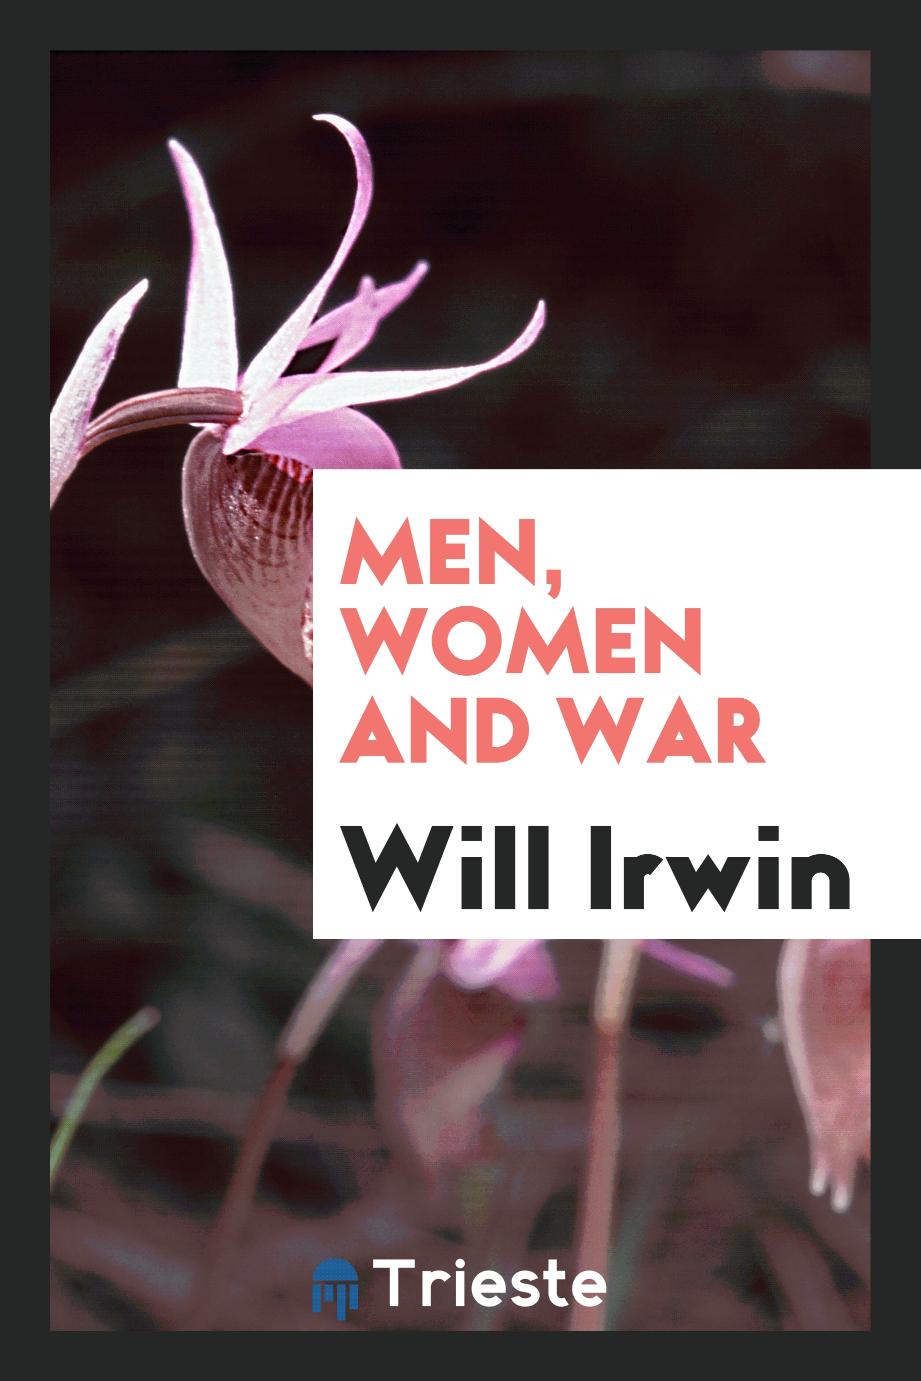 Men, women and war